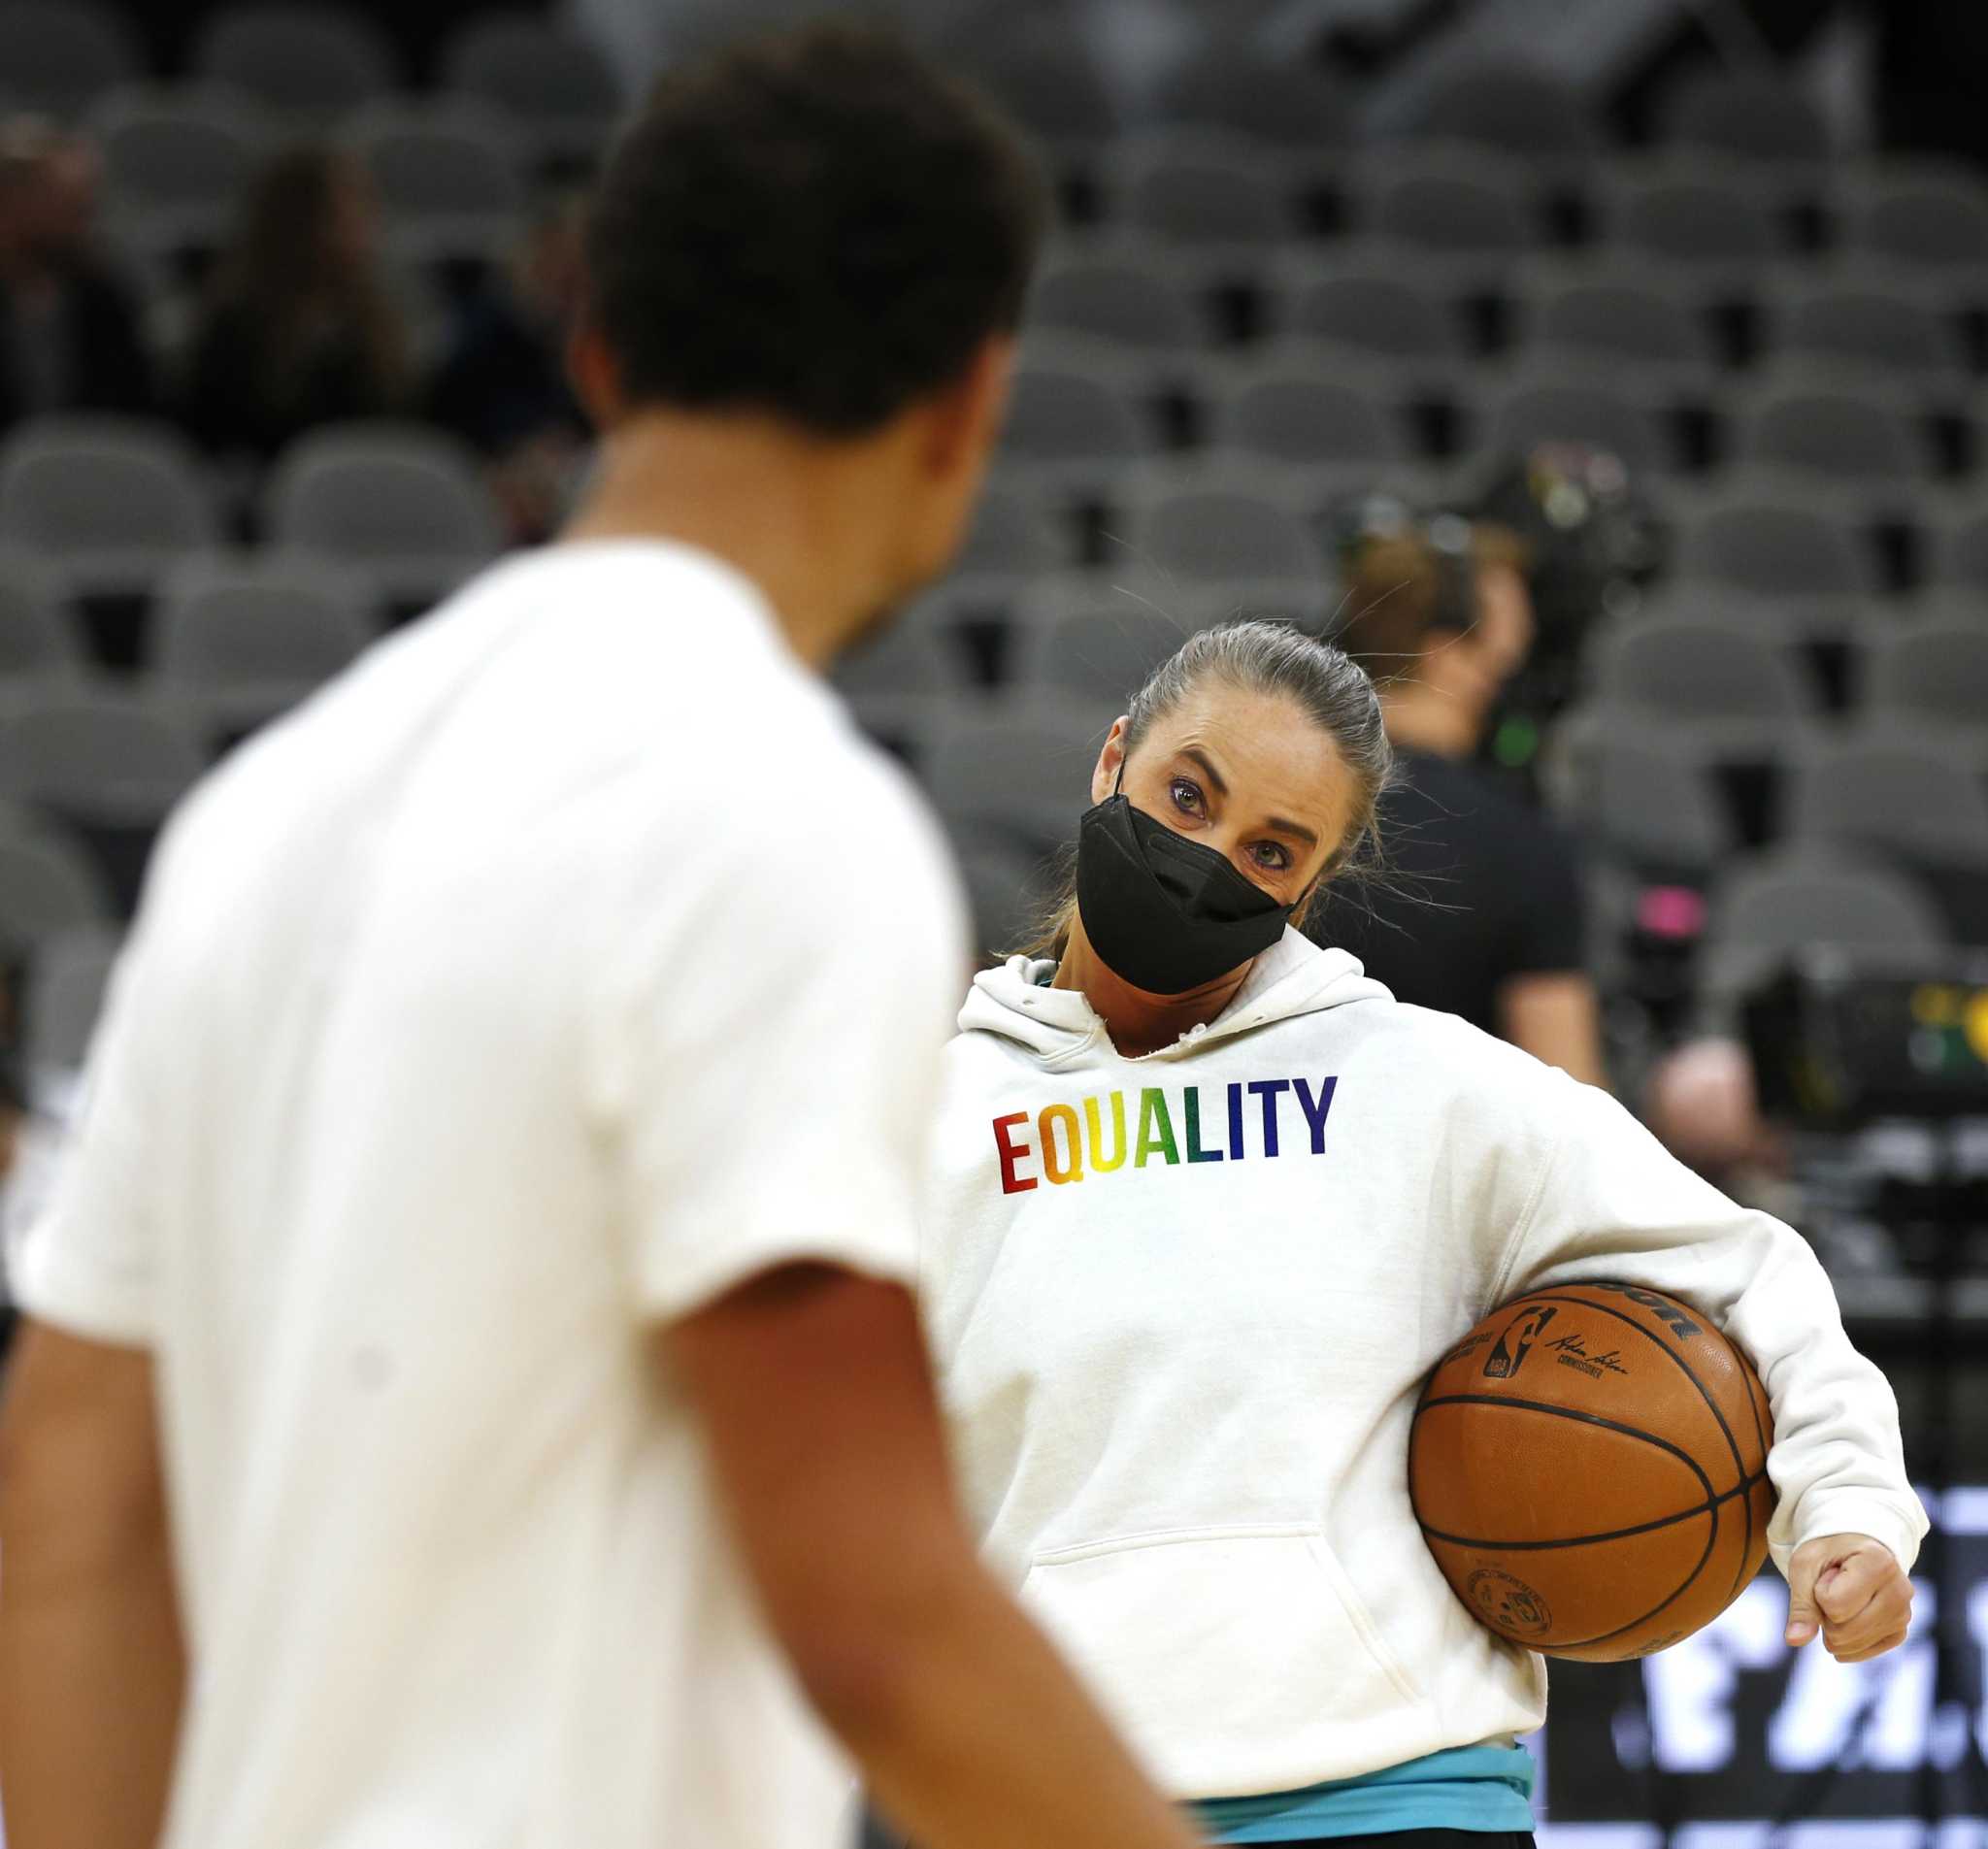 Aces raise Spurs' Hammon's WNBA jersey